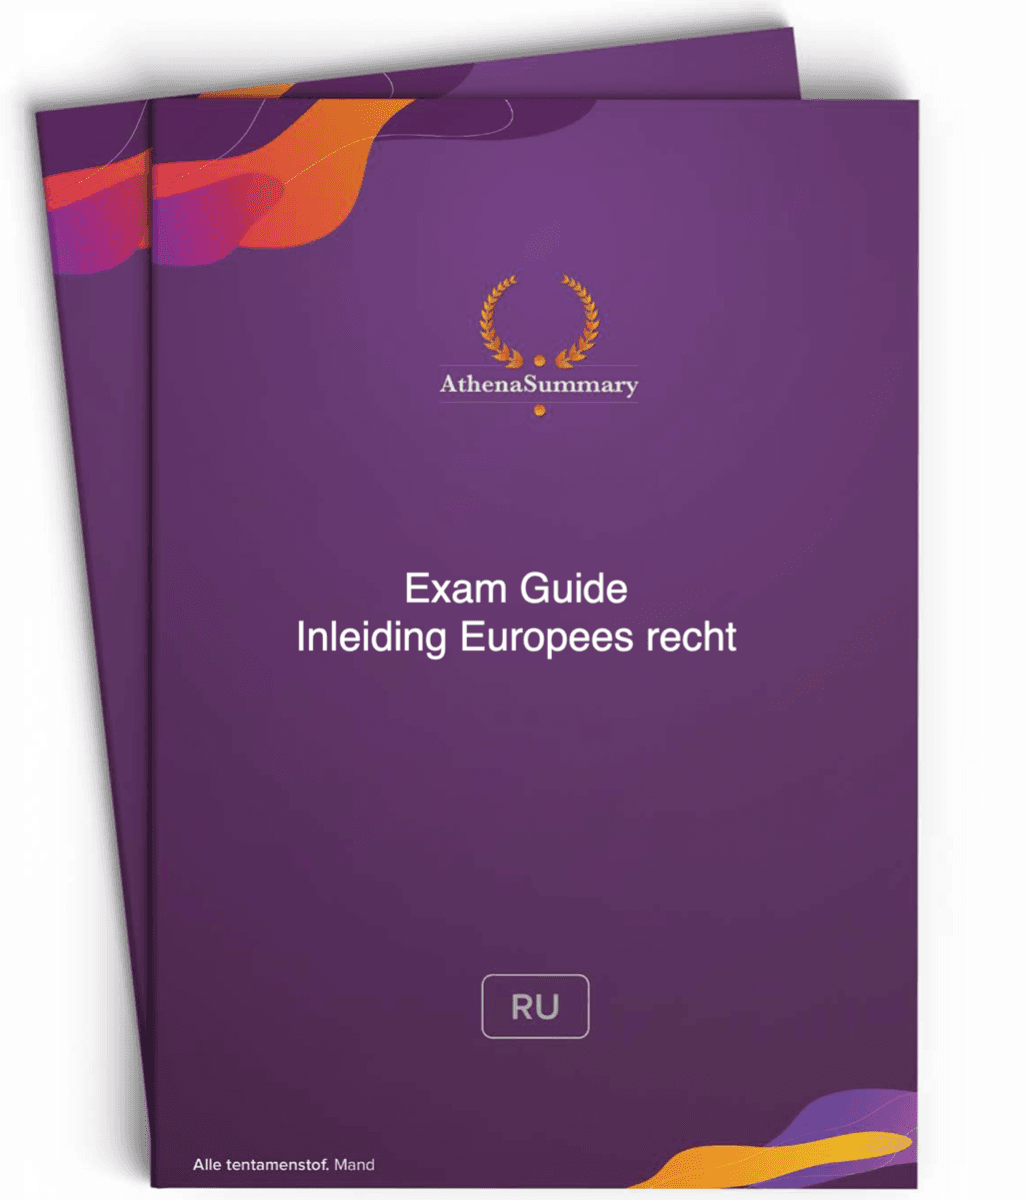 Exam Guide - Inleiding Europees recht